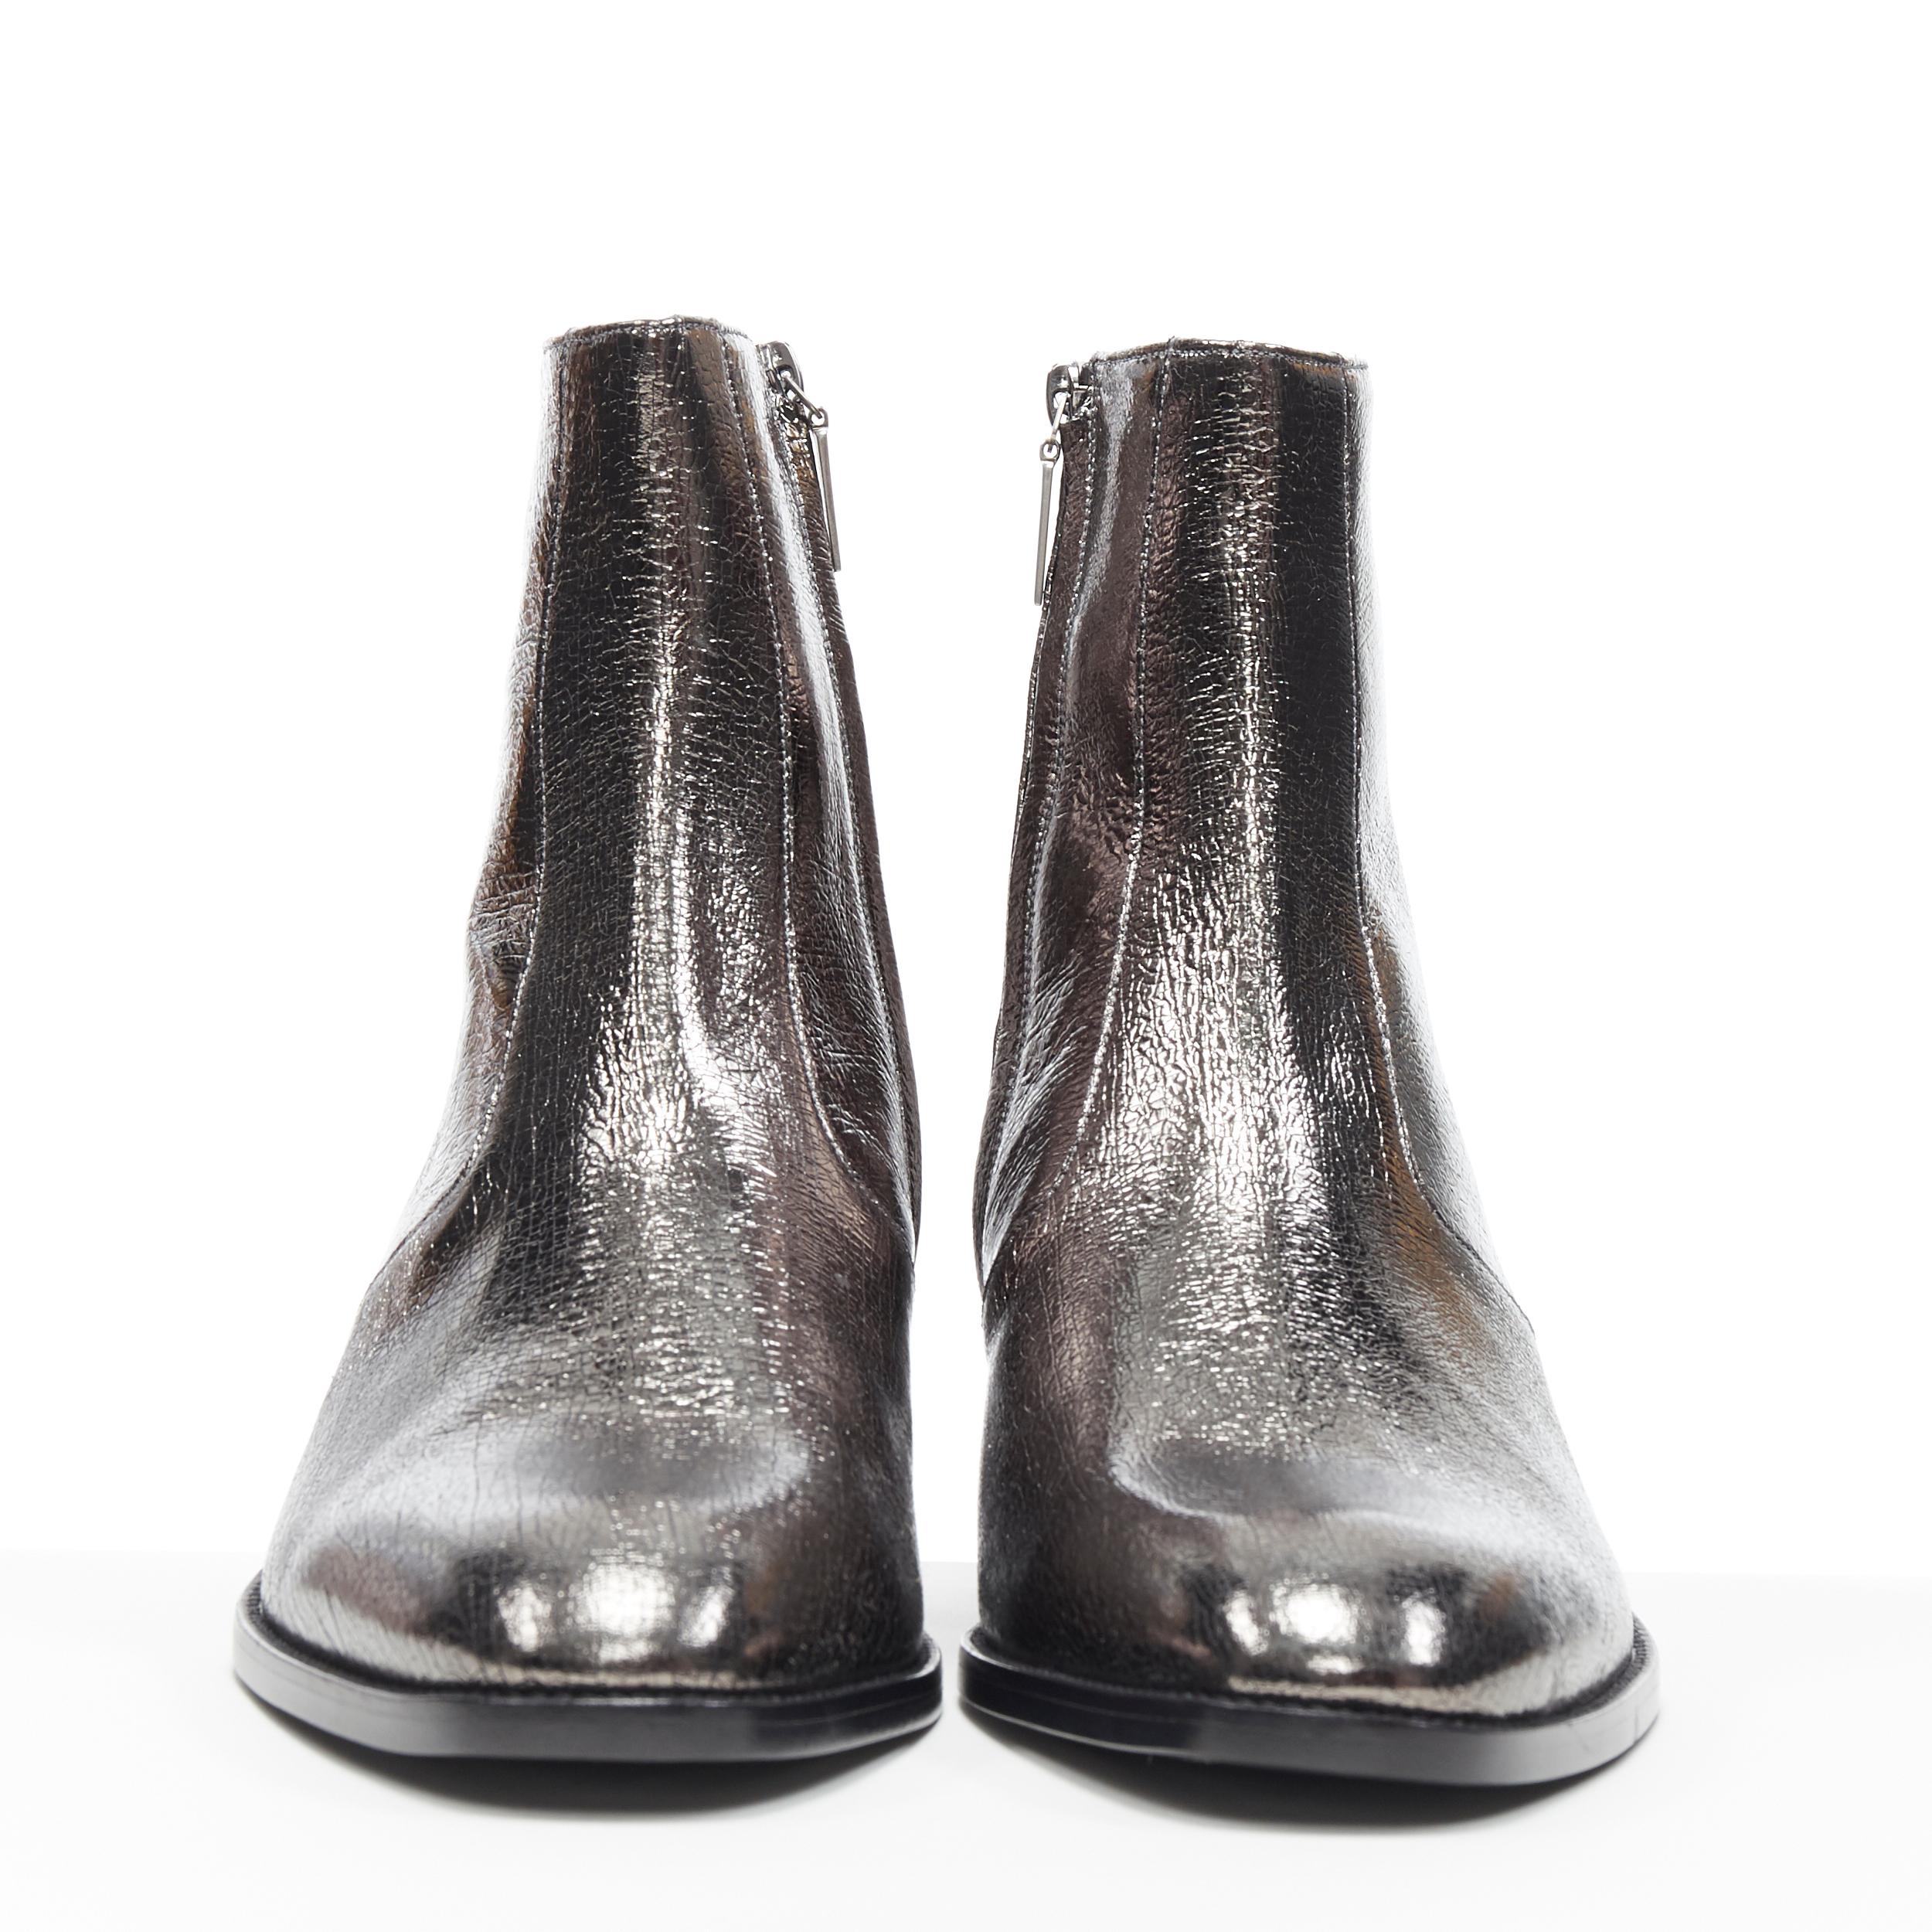 saint laurent silver boots